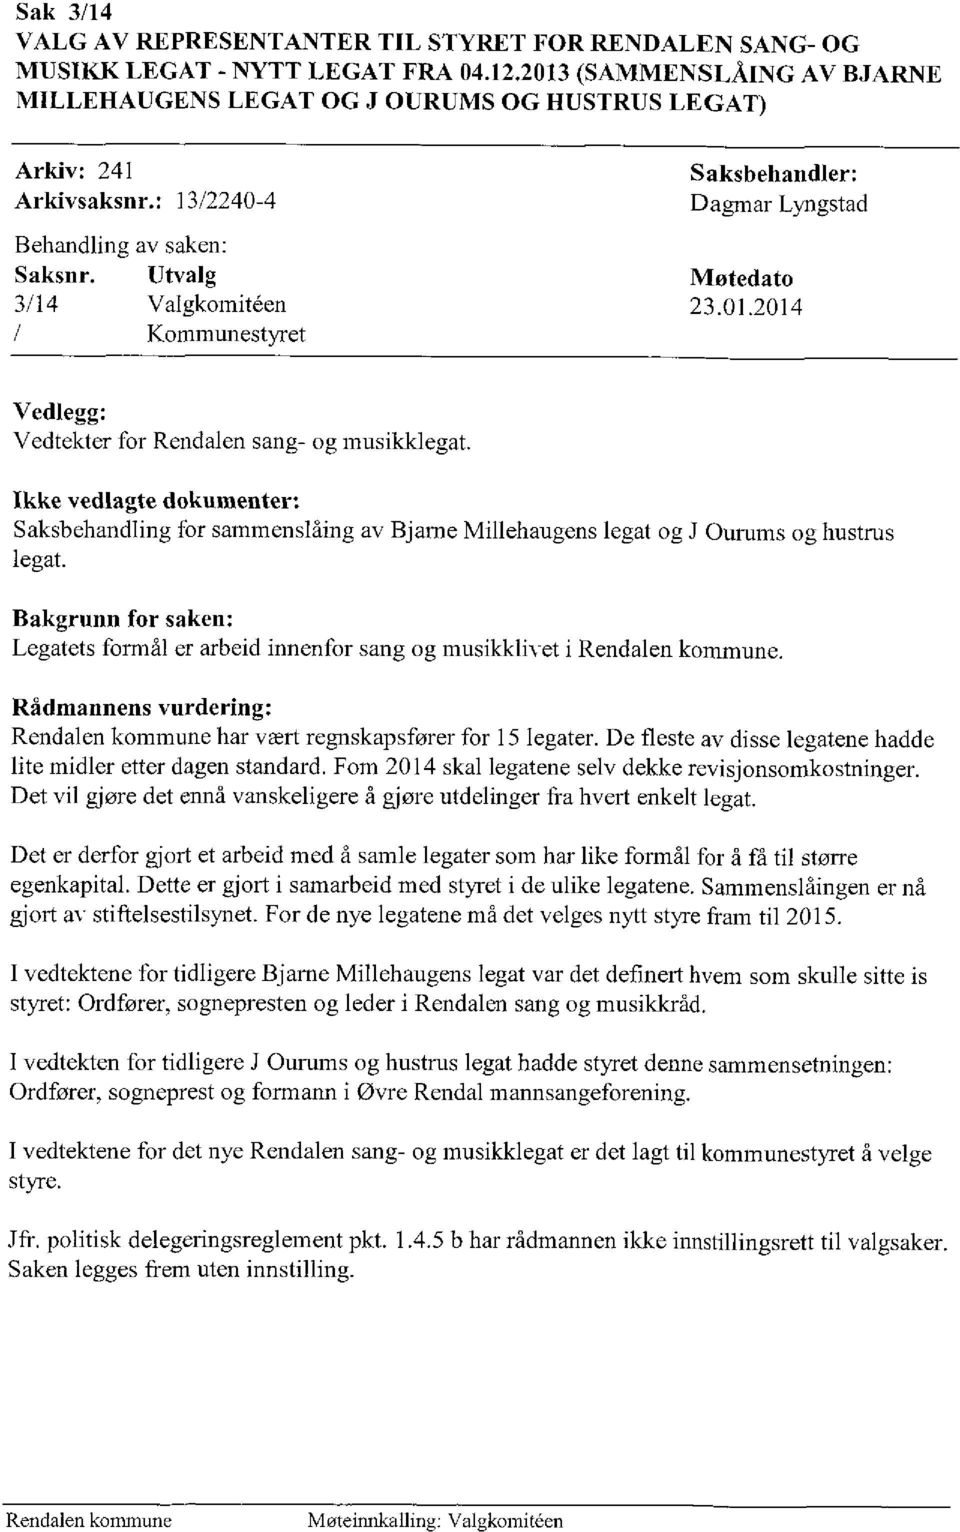 Utvalg Møtedato 3/14 Valgkorniteen 23.01.2014 Kommunestyret Vedlegg: Vedtekter for Rendalen sang- og musilcklegat.